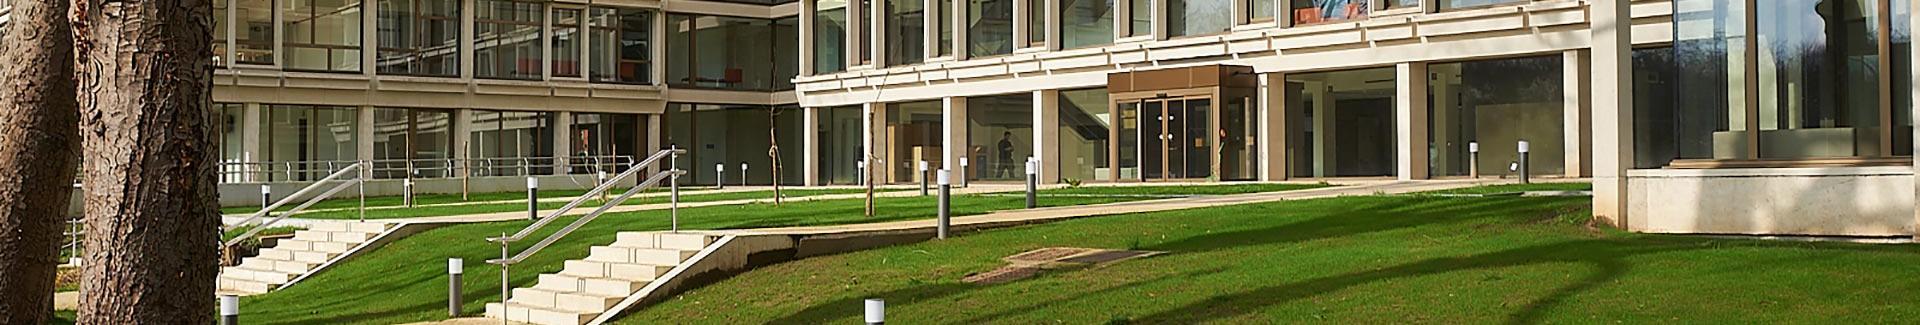 Le Centre administratif d’Uccle - banner